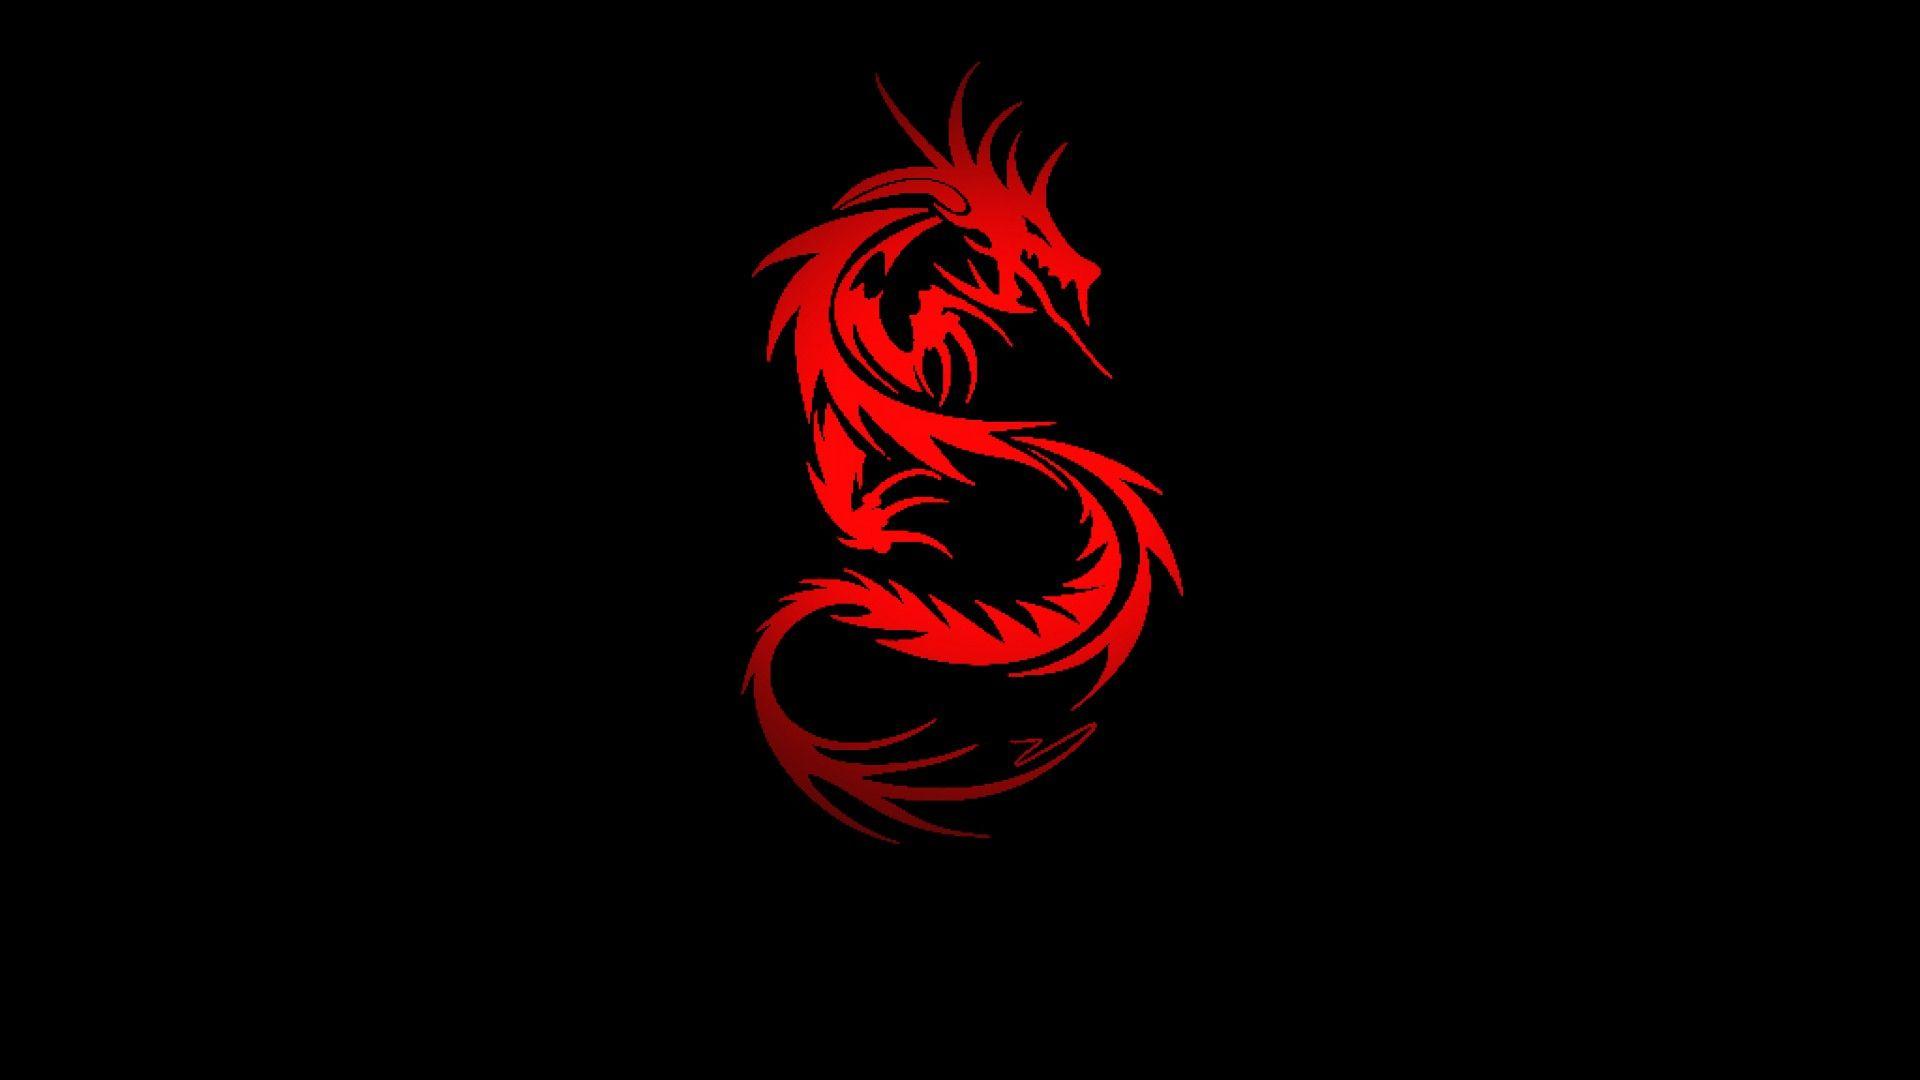 Dragon Logo Wallpapers - Top Những Hình Ảnh Đẹp